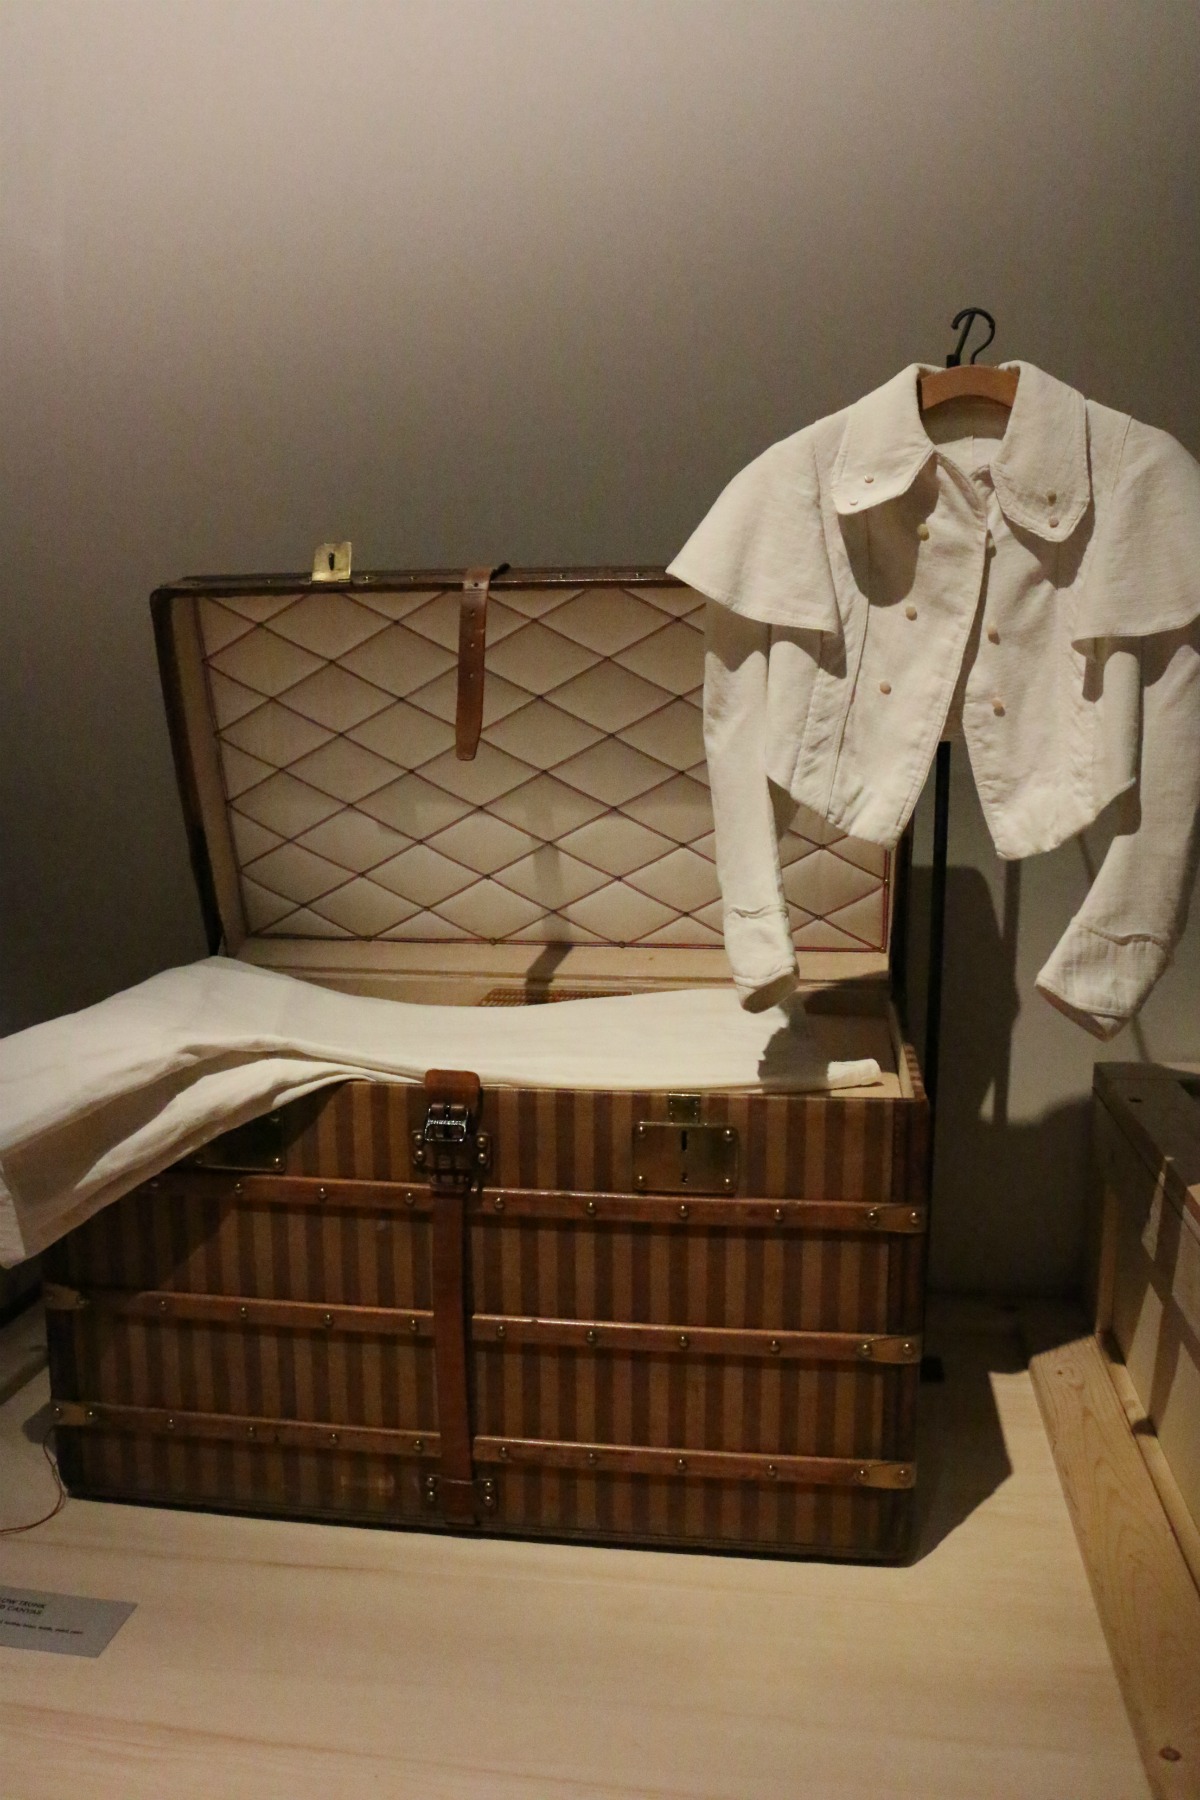 The Golden Ticket- Louis Vuitton Exhibit in New York City